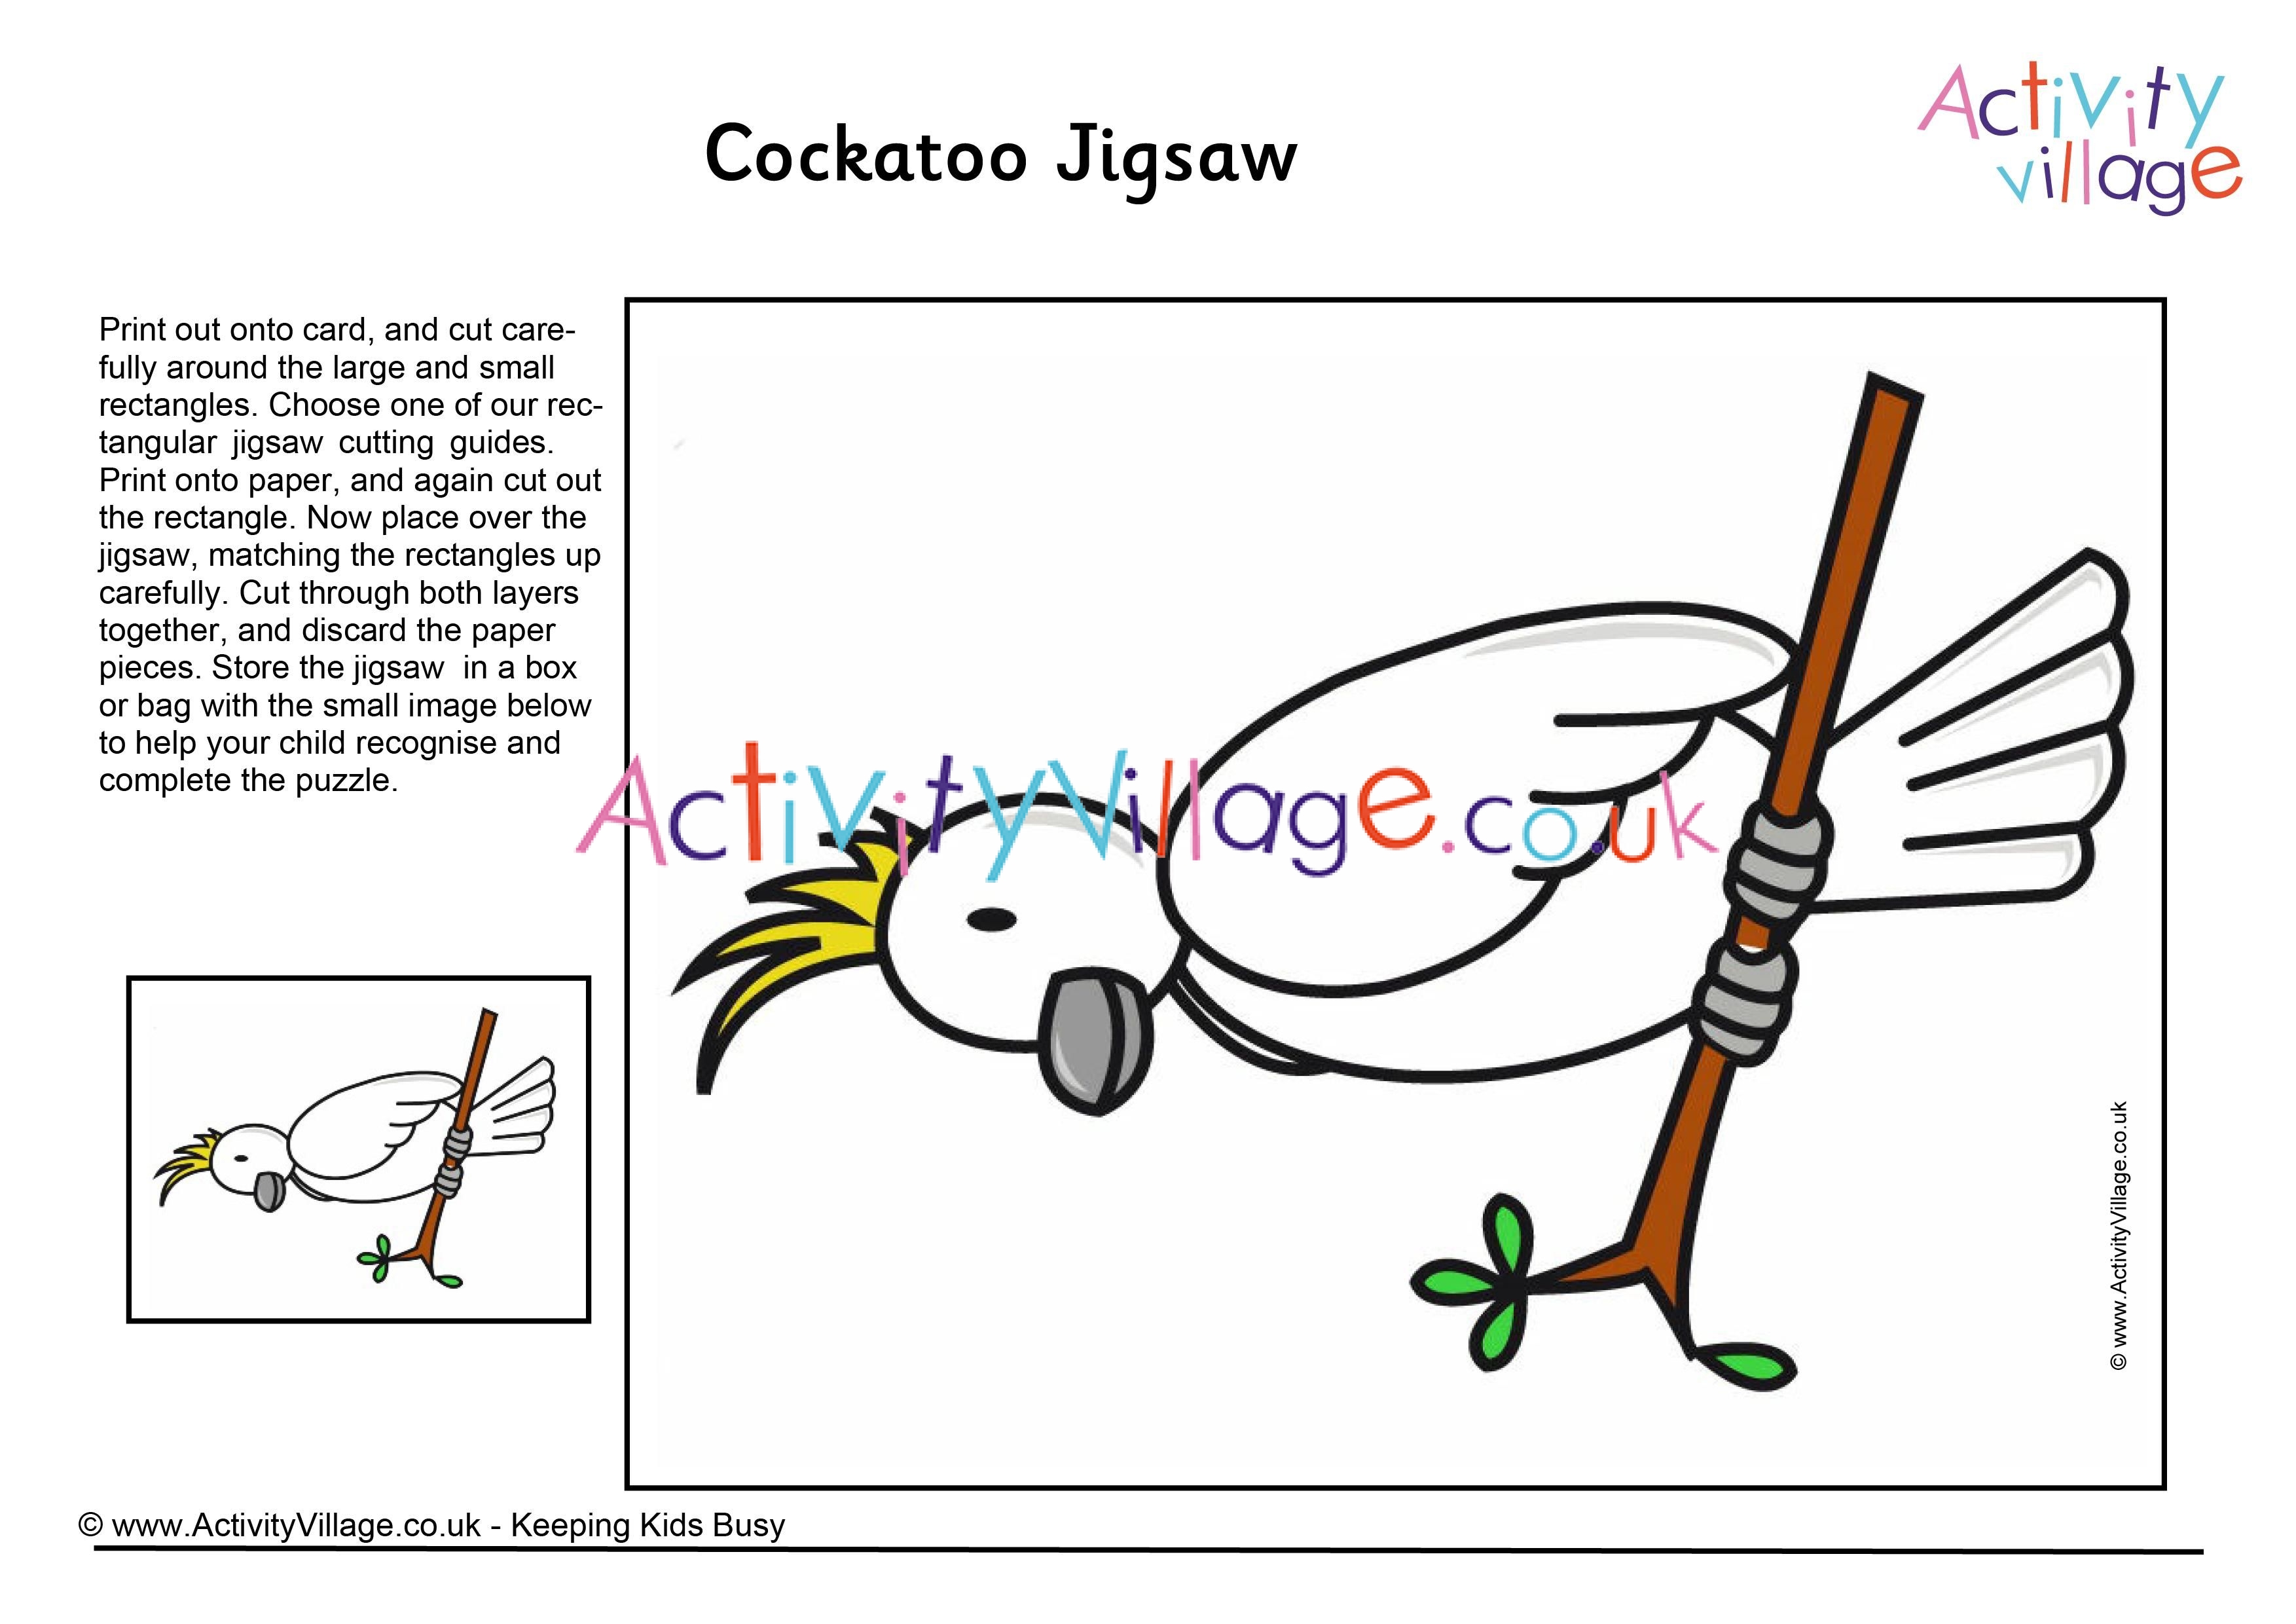 Cockatoo jigsaw